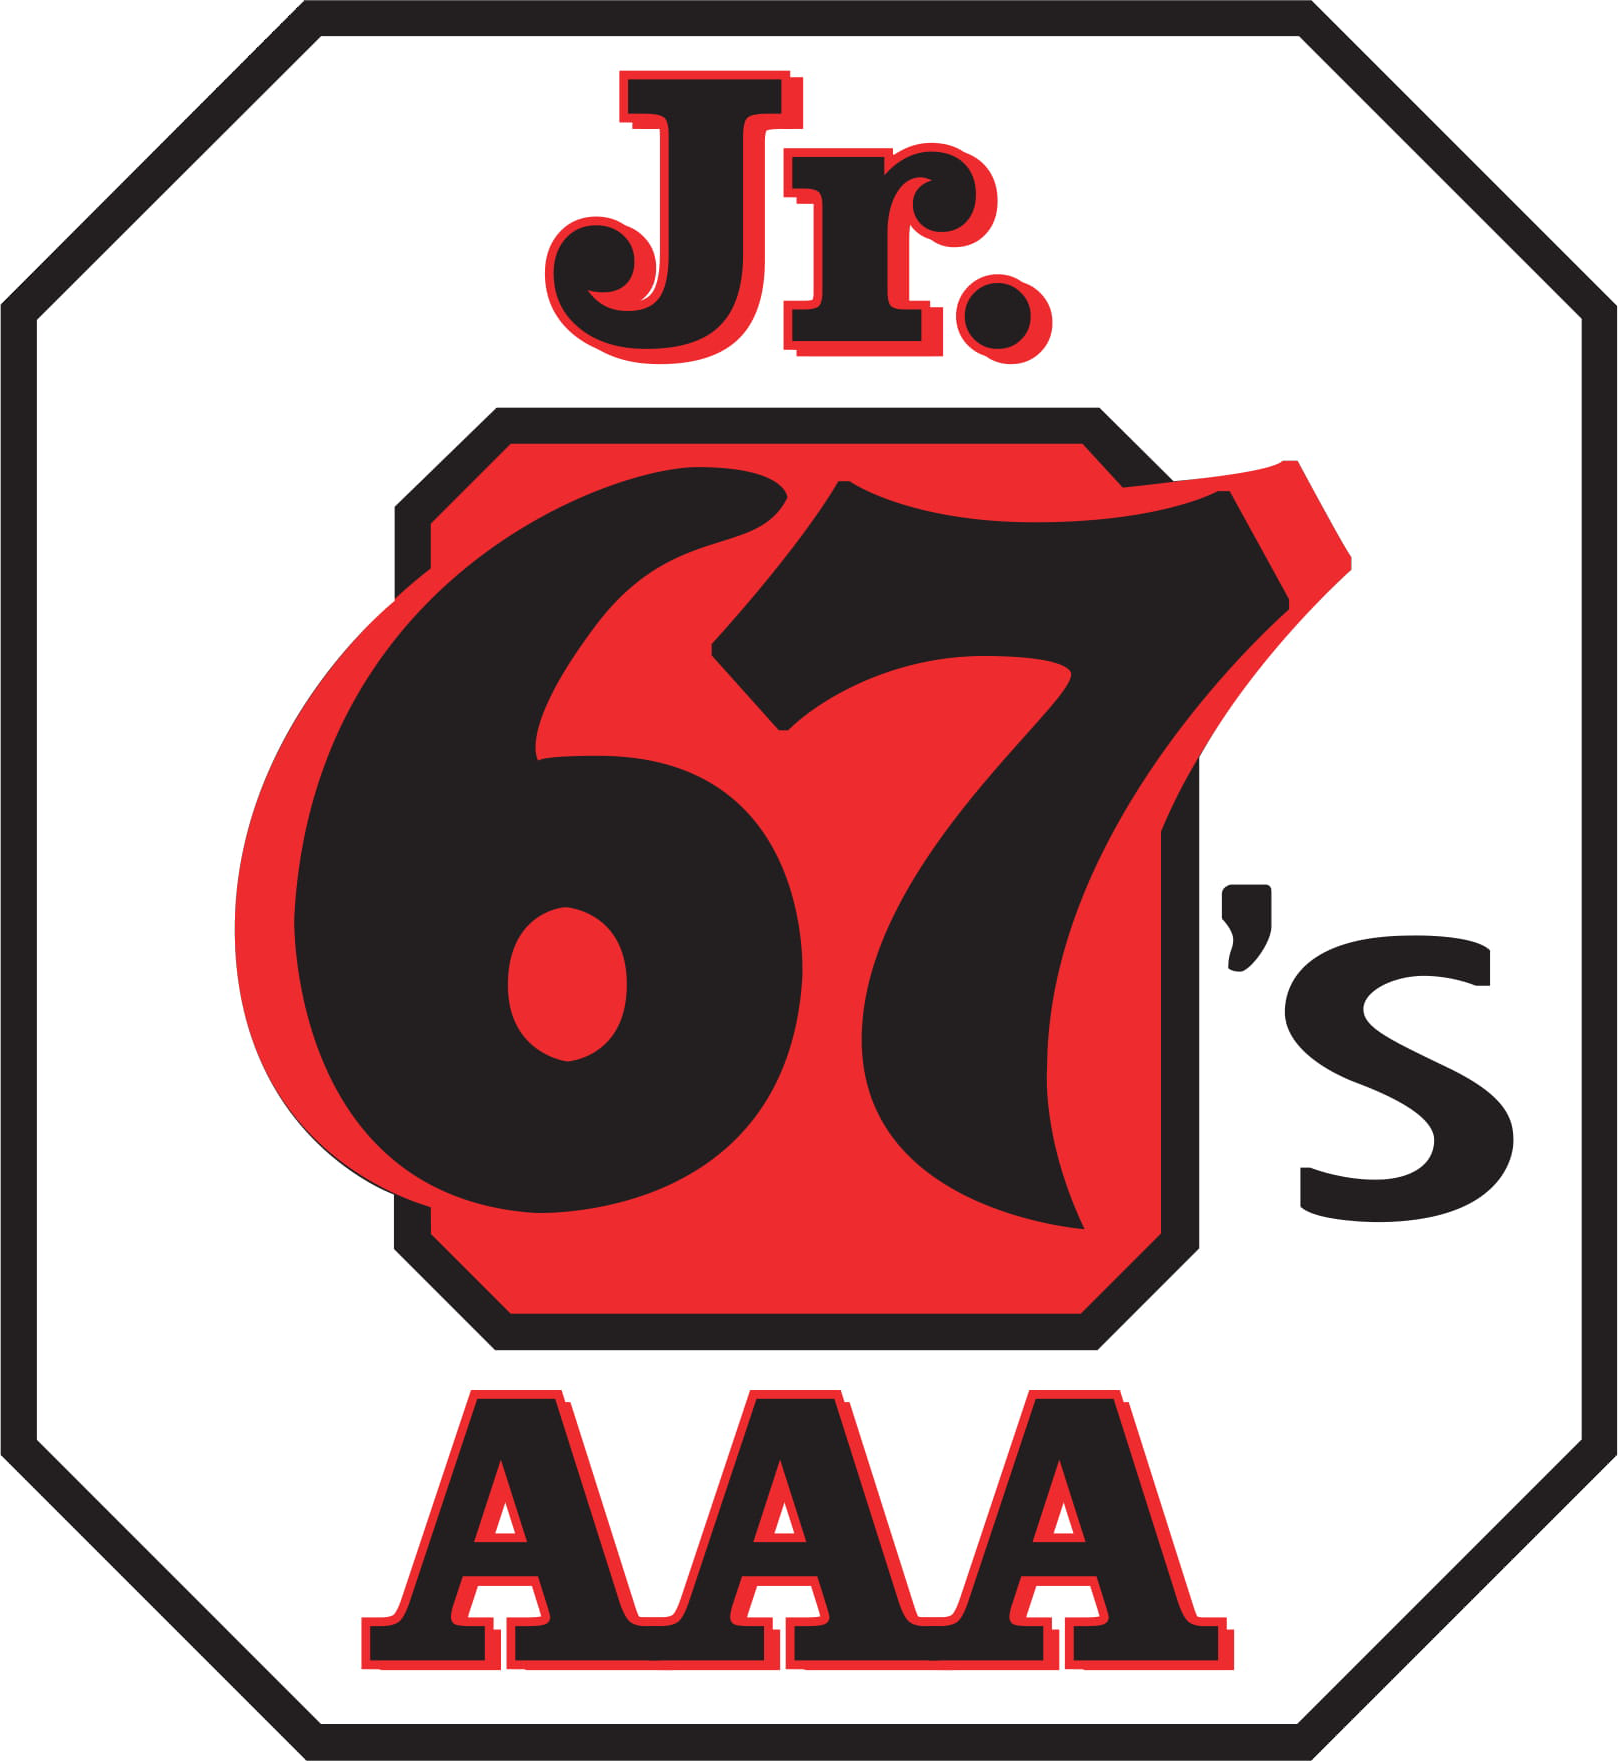 67's Logo Vector-1 (1)